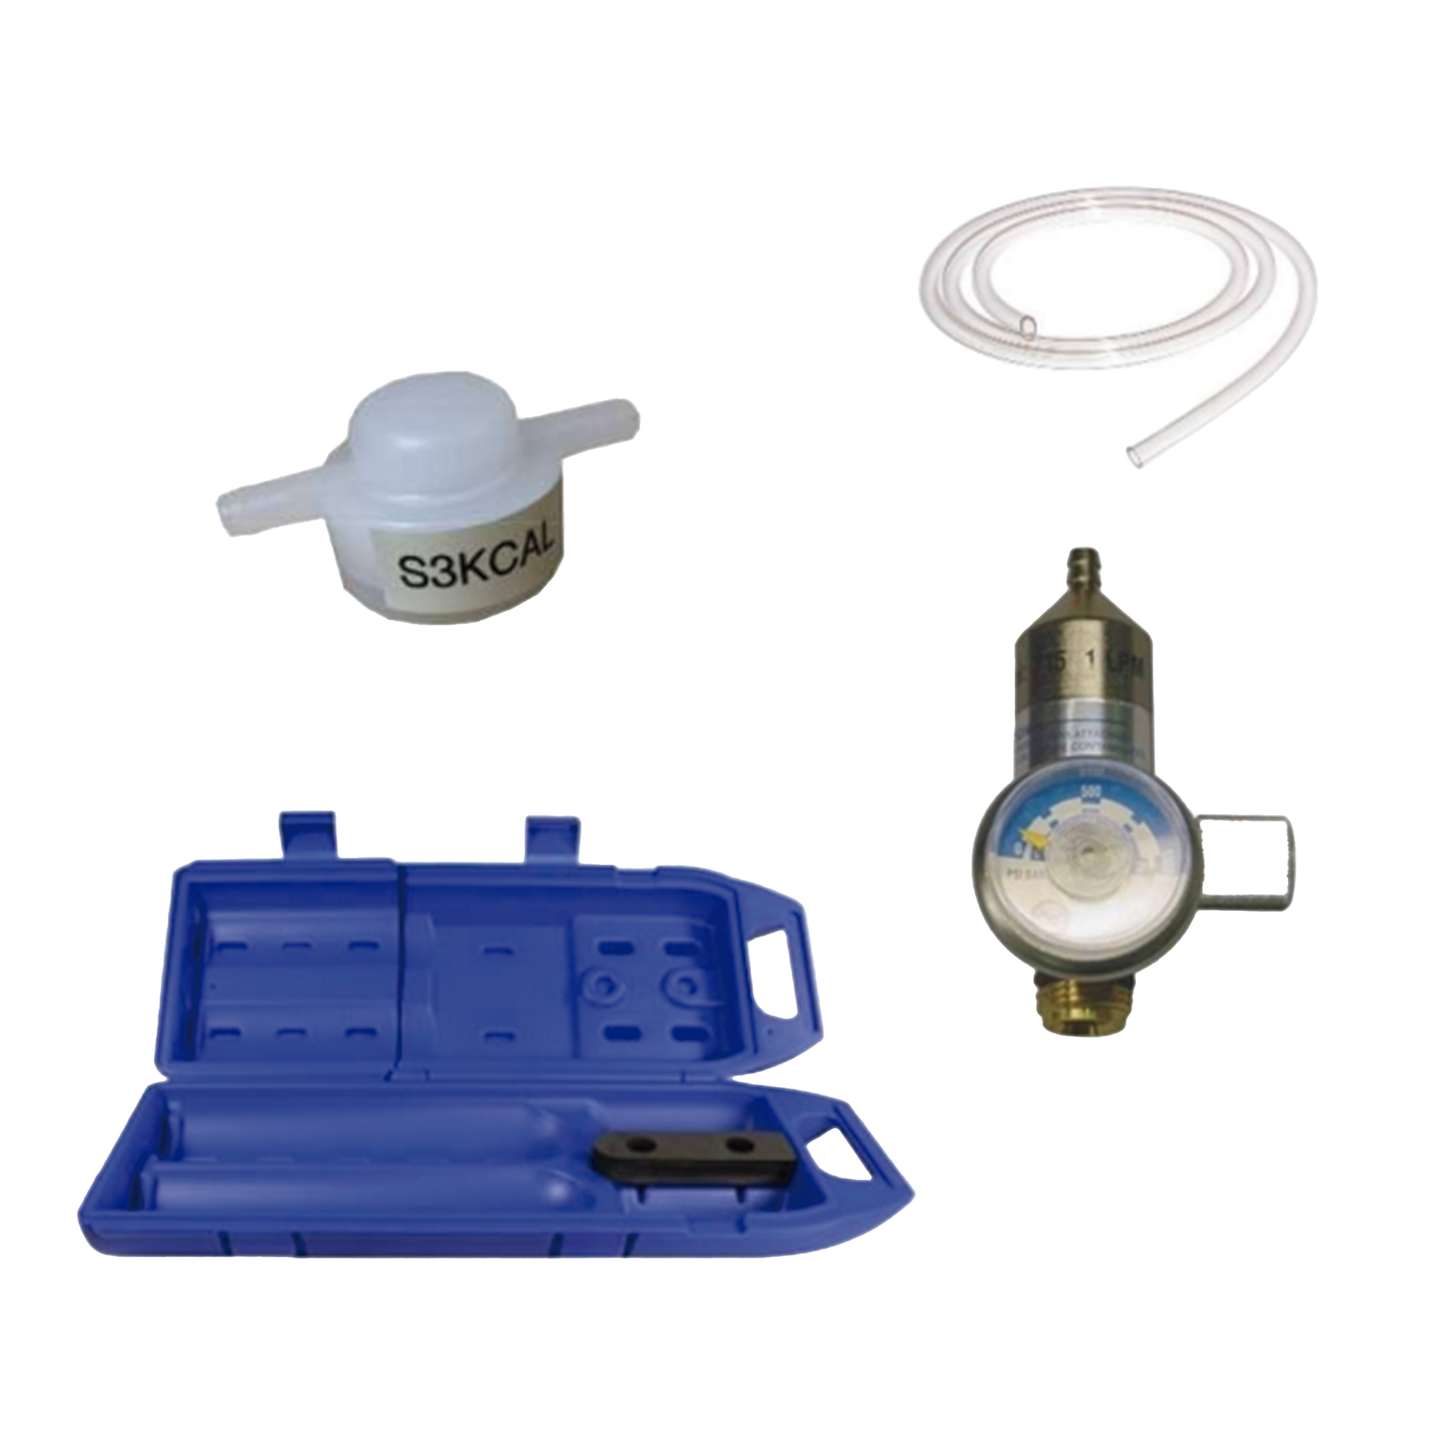 Kit de calibración para equipo detector con sensor para gas tóxico, incluye: tubing, adaptador de flujo, regulador con flujo de 0.3 LPM y estuche de transporte